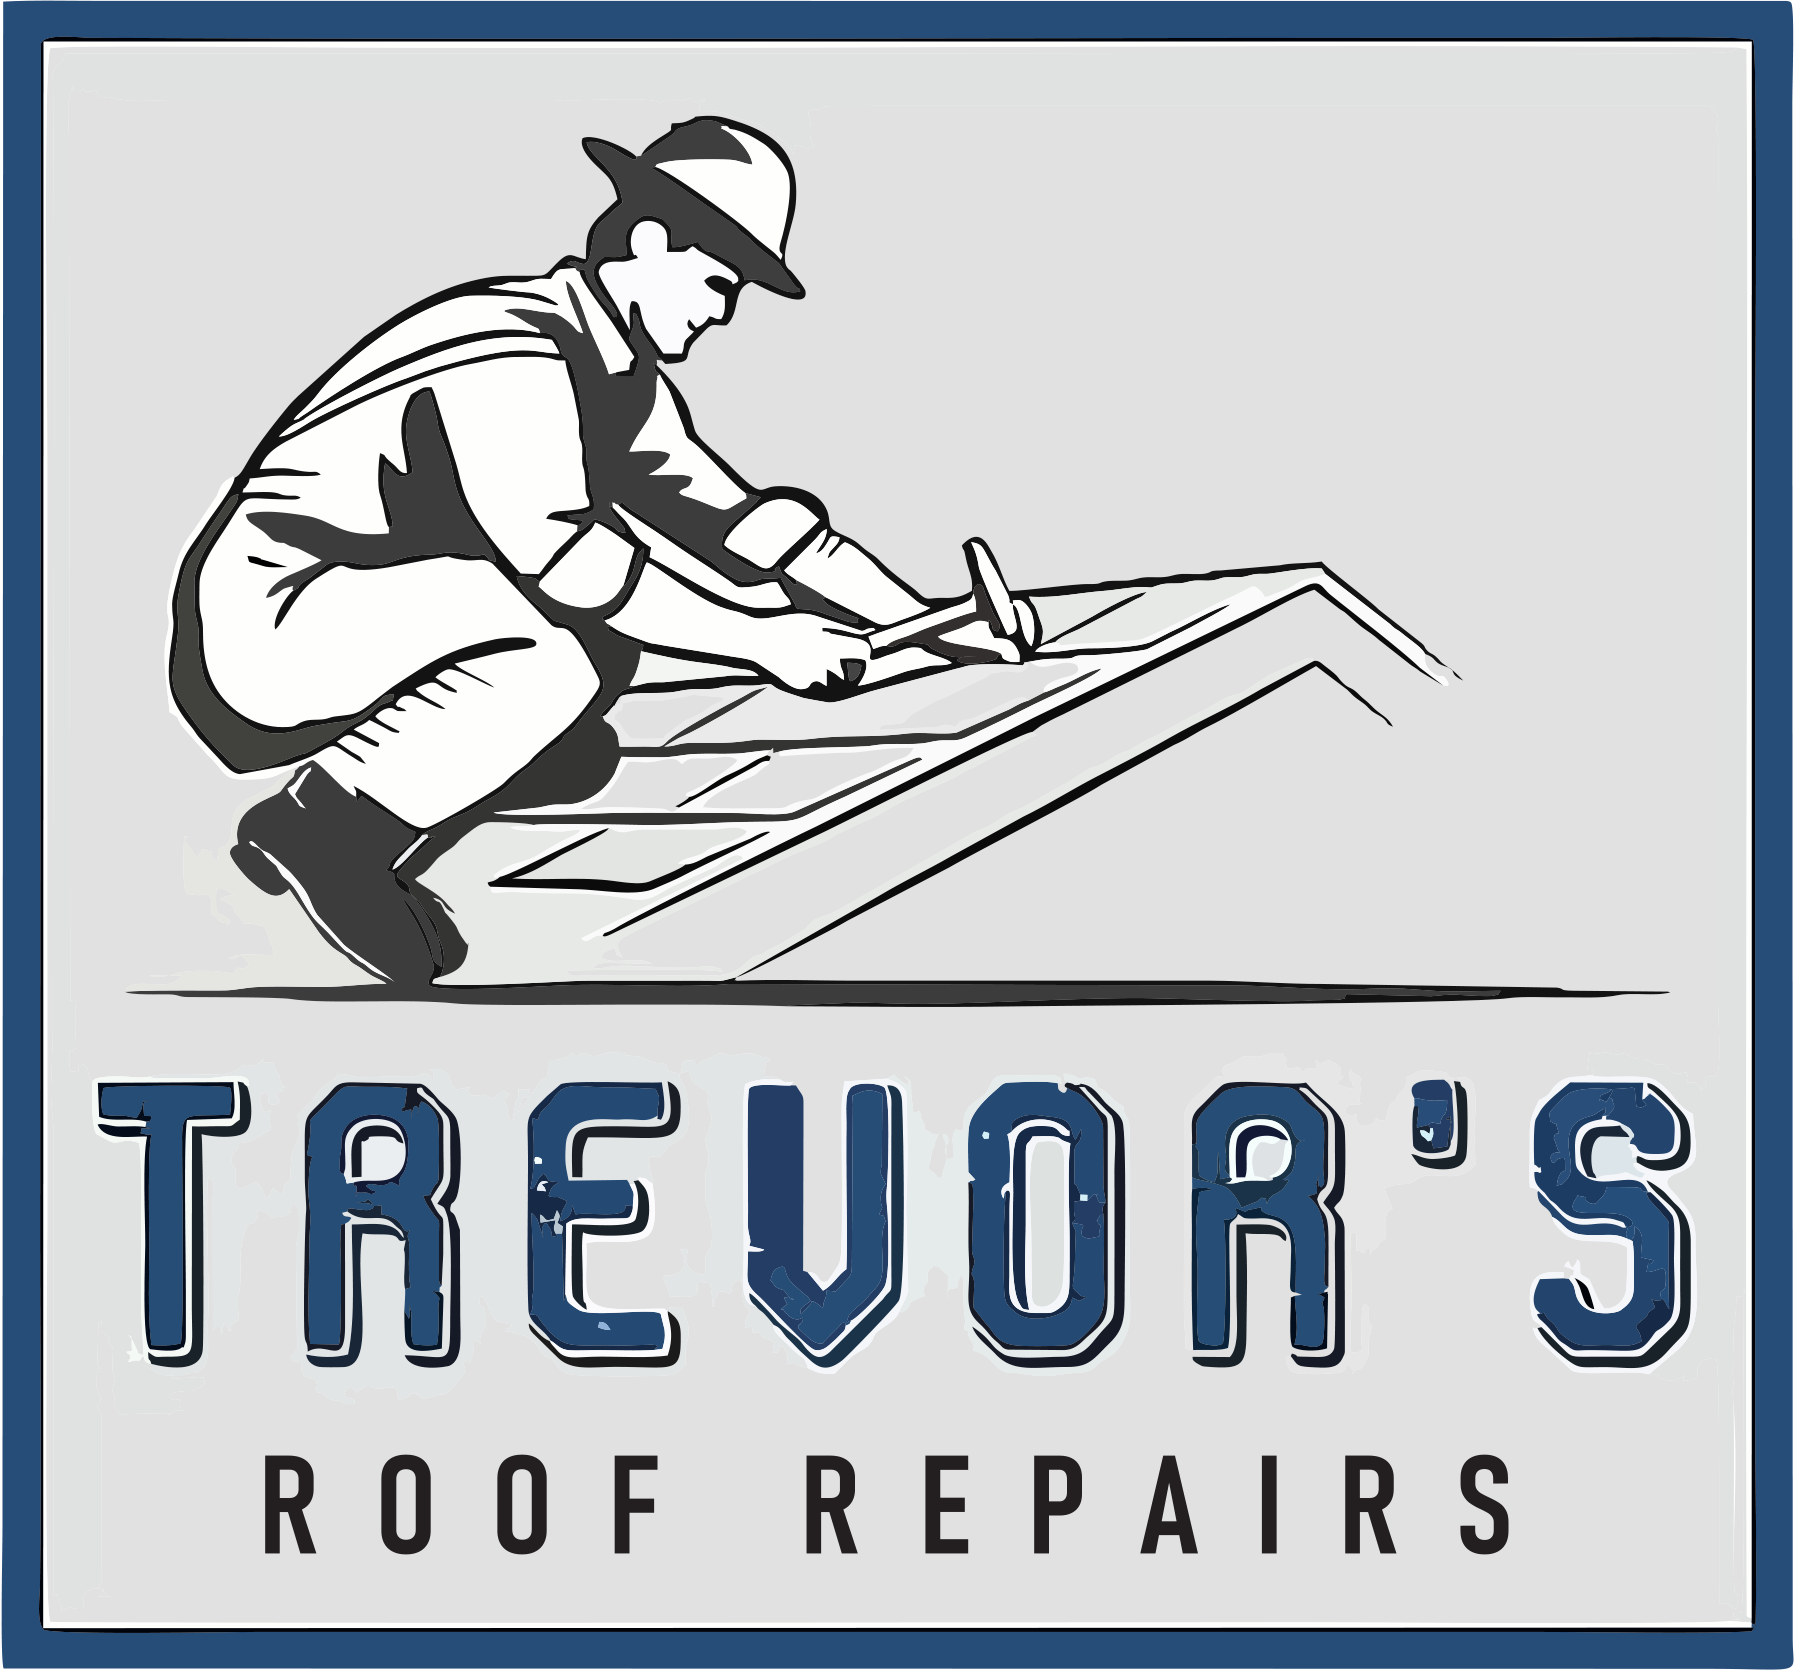 Trevor’s Roof Repairs